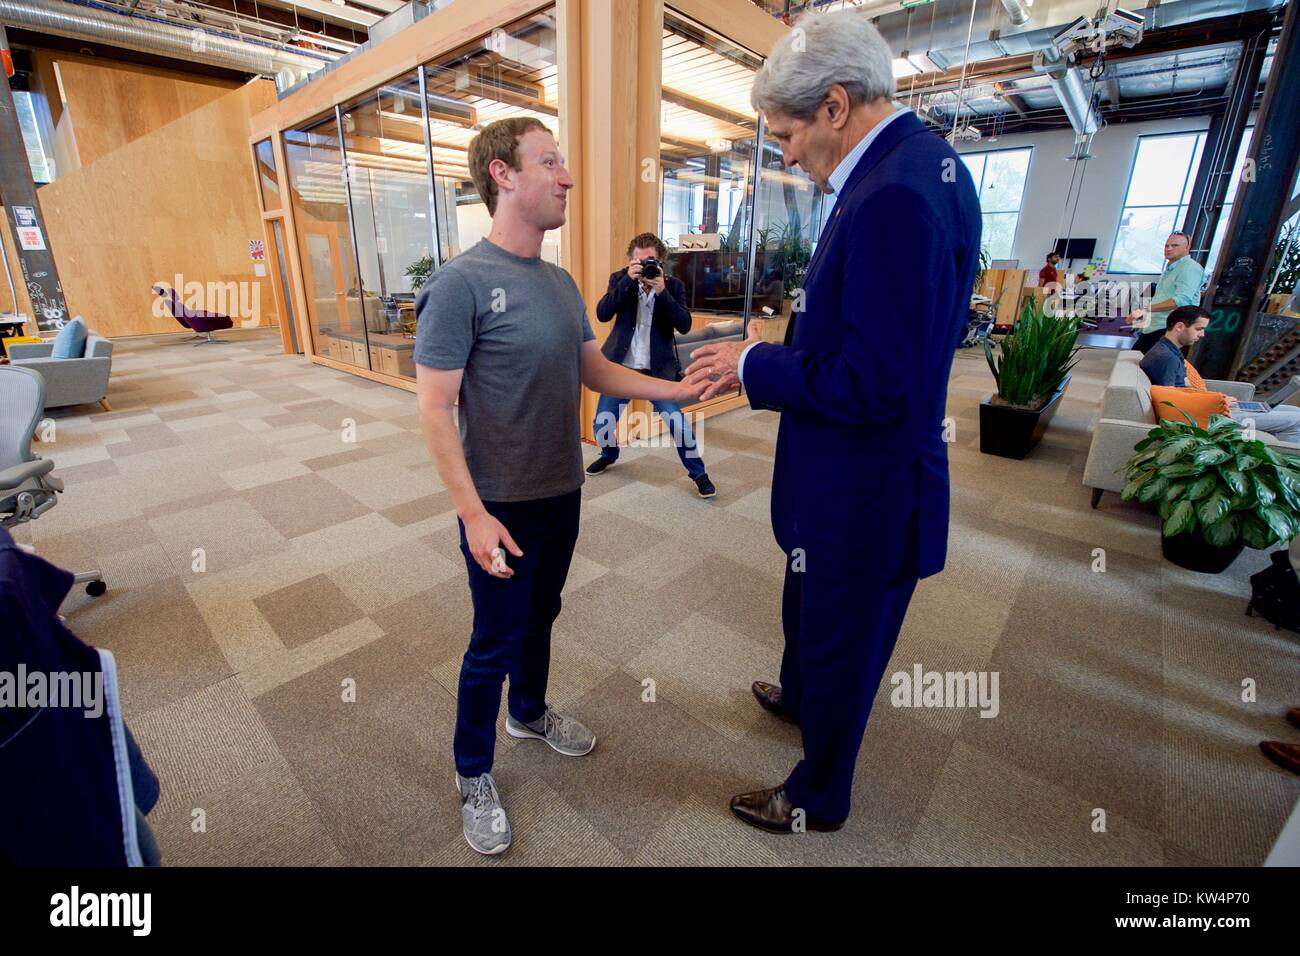 Il Segretario di Stato americano John Kerry che parla con il CEO di Facebook Mark Zuckerberg, Menlo Park, California, 23 giugno 2016. Immagine cortesia Dipartimento di Stato degli Stati Uniti. Foto Stock